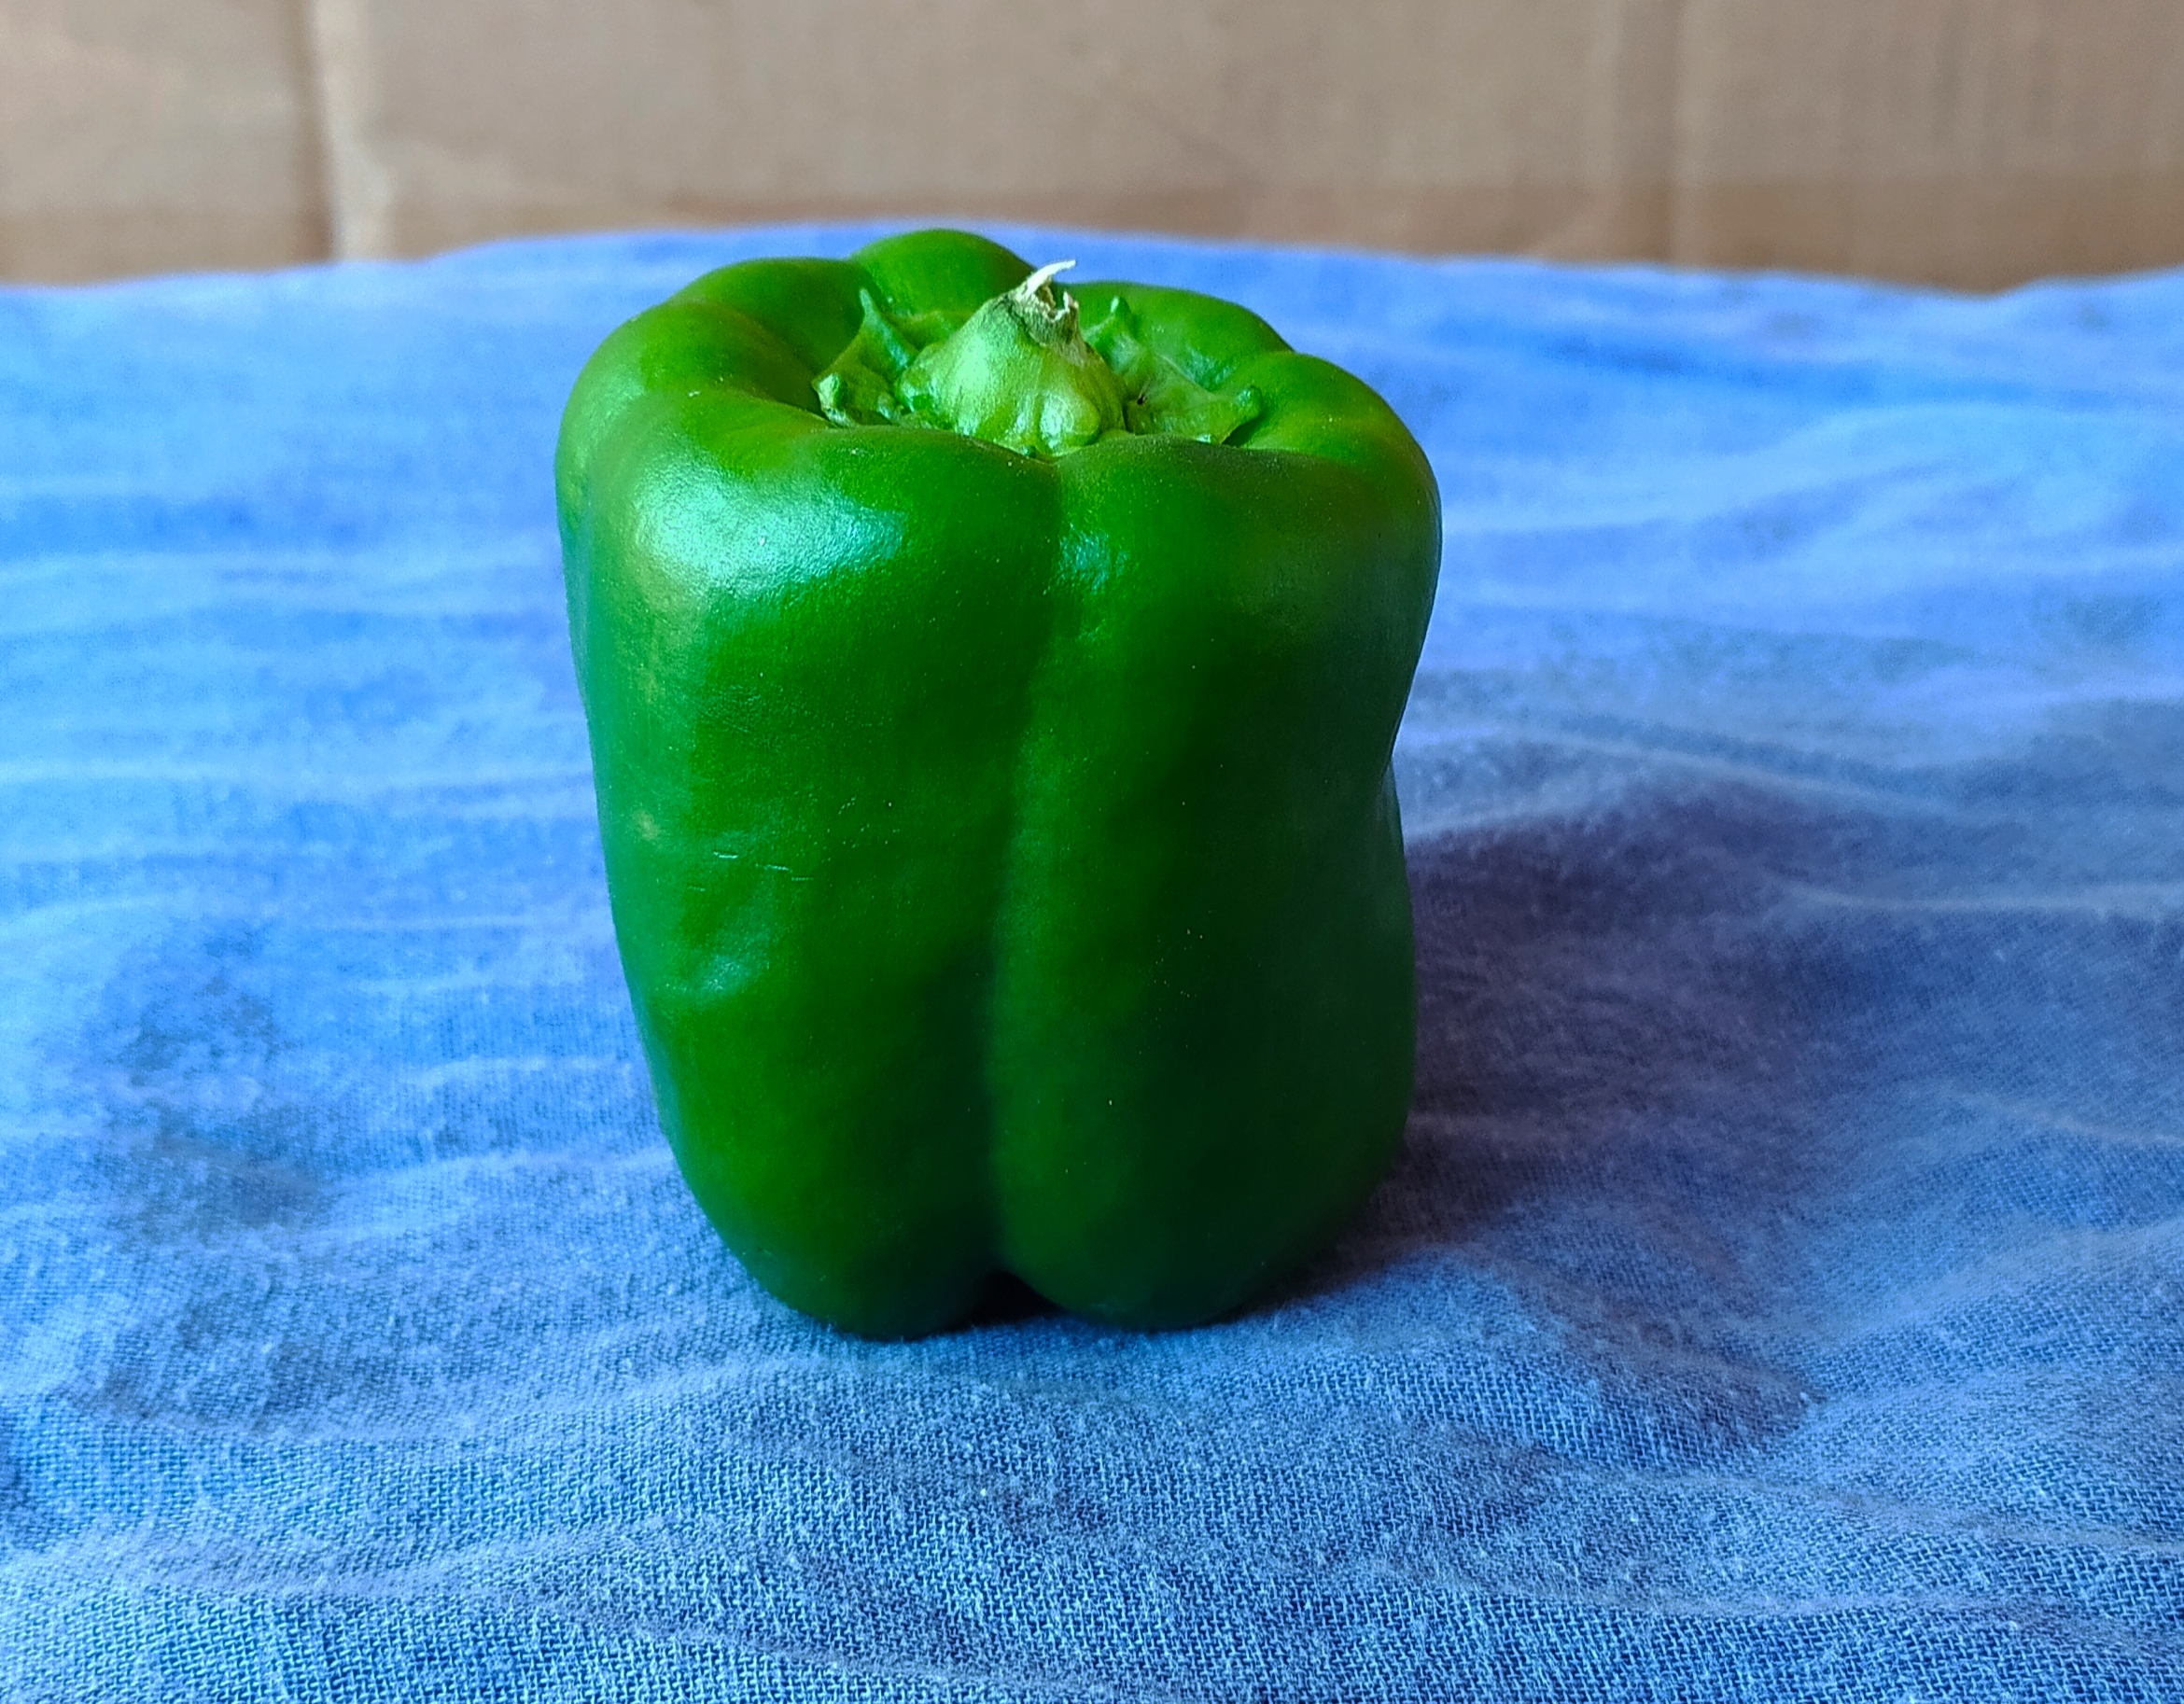 A Bell pepper